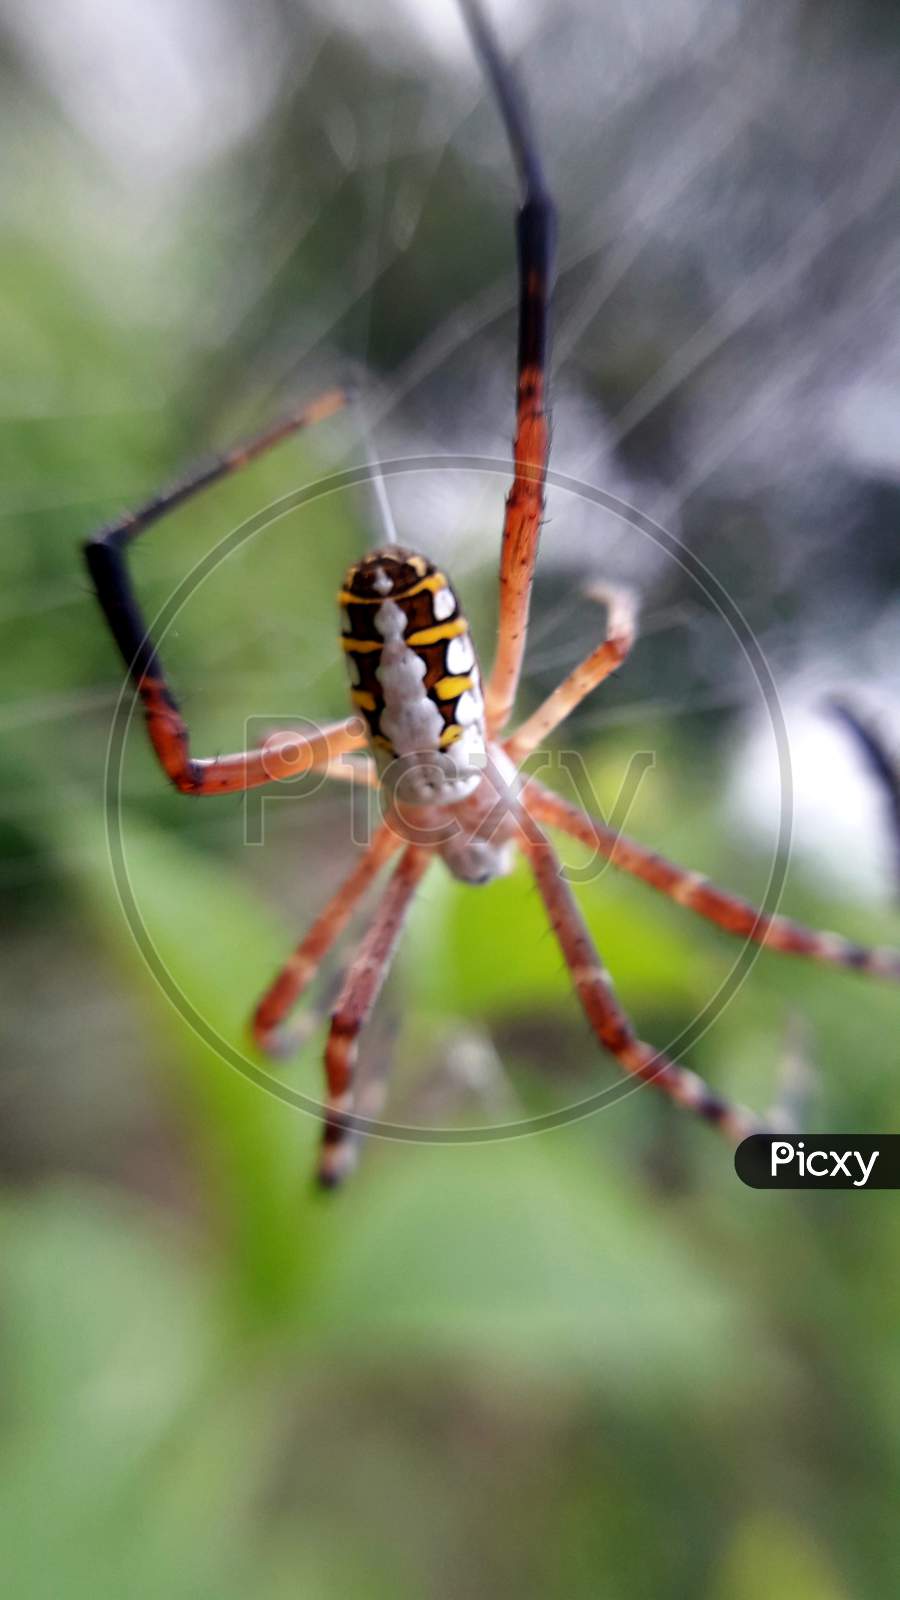 The Yellow Garden Spider, Argiope aurantia